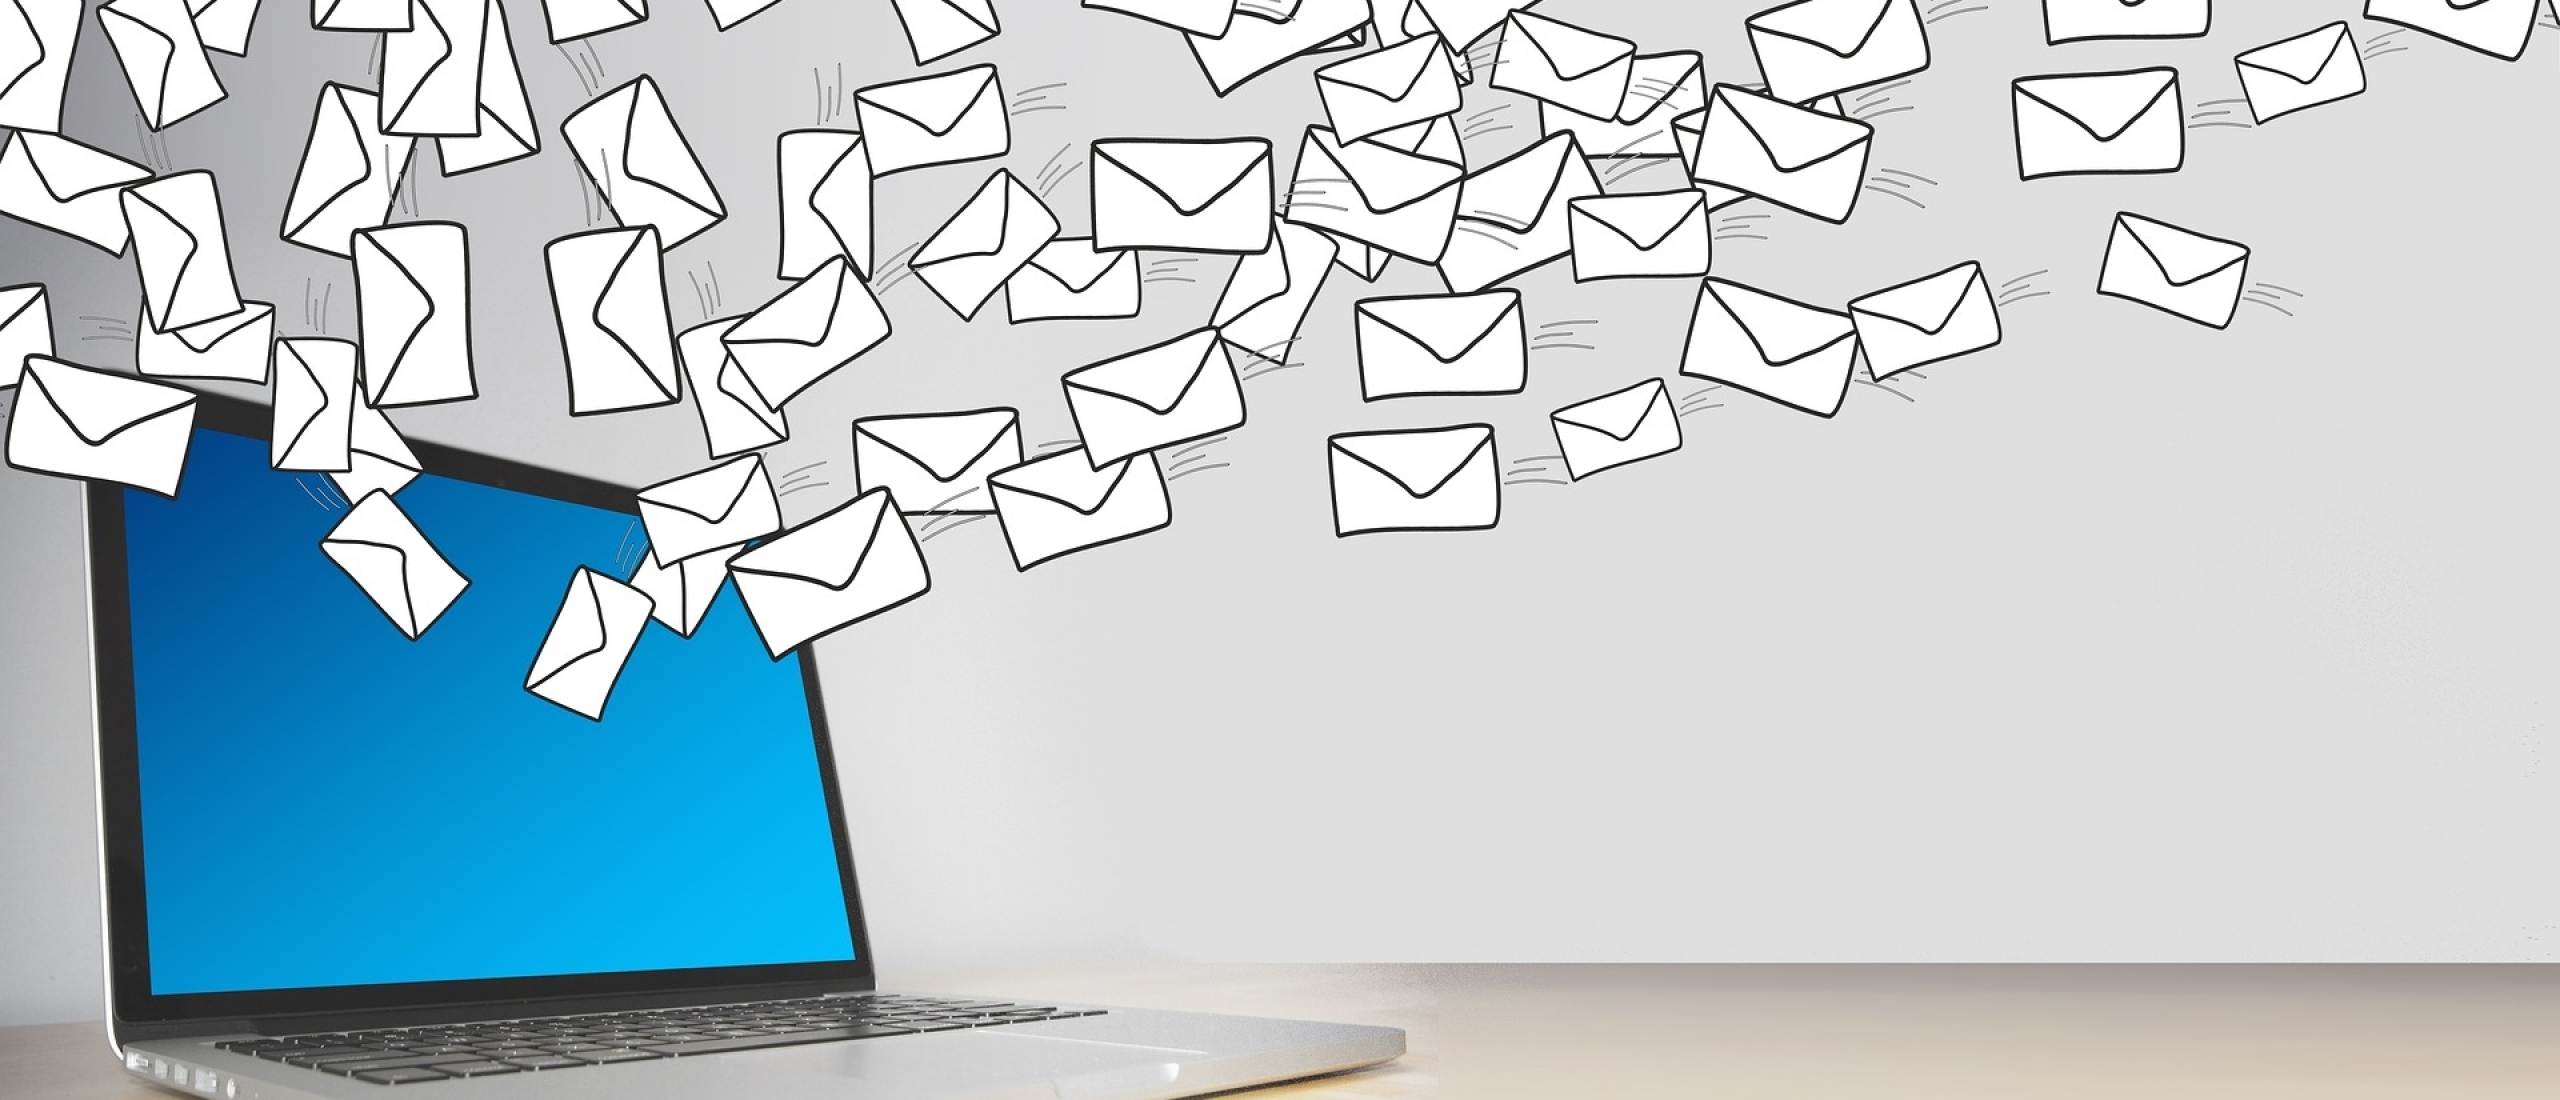 Hoe maak je een zakelijke email aan?